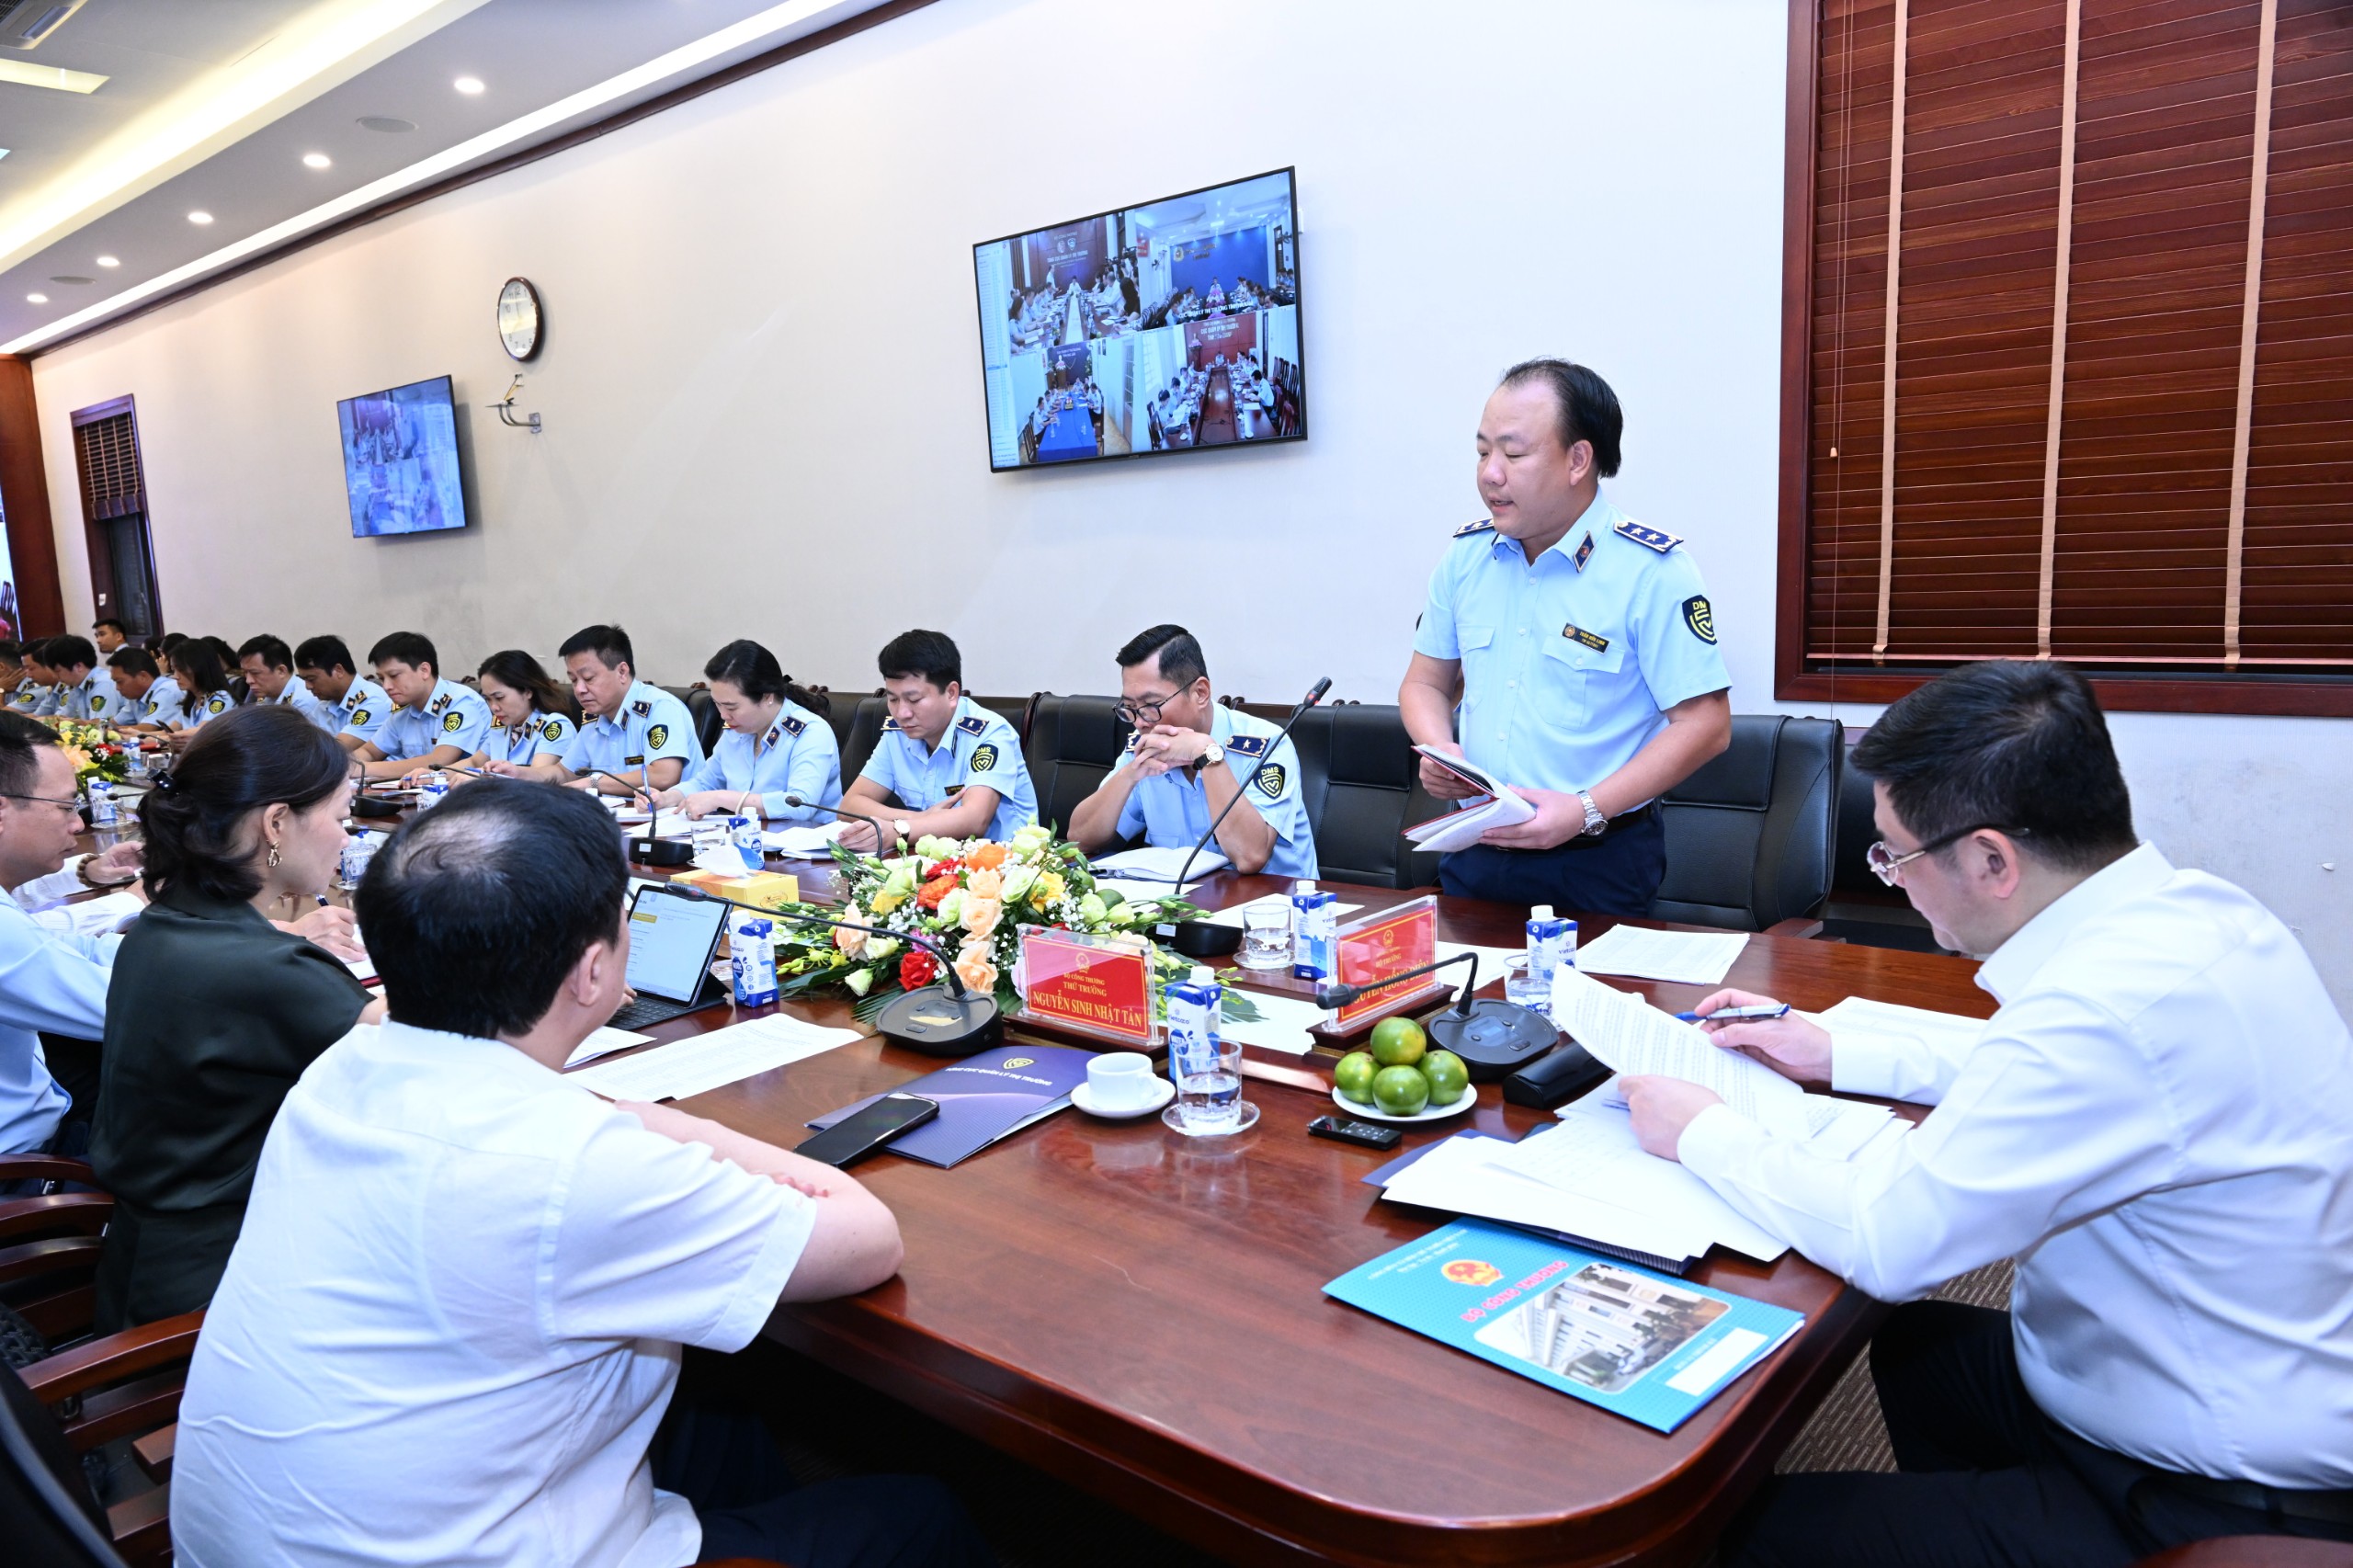 Bộ trưởng Nguyễn Hồng Diên làm việc với lực lượng QLTT, Sở Công Thương về tình hình cung ứng hàng hóa